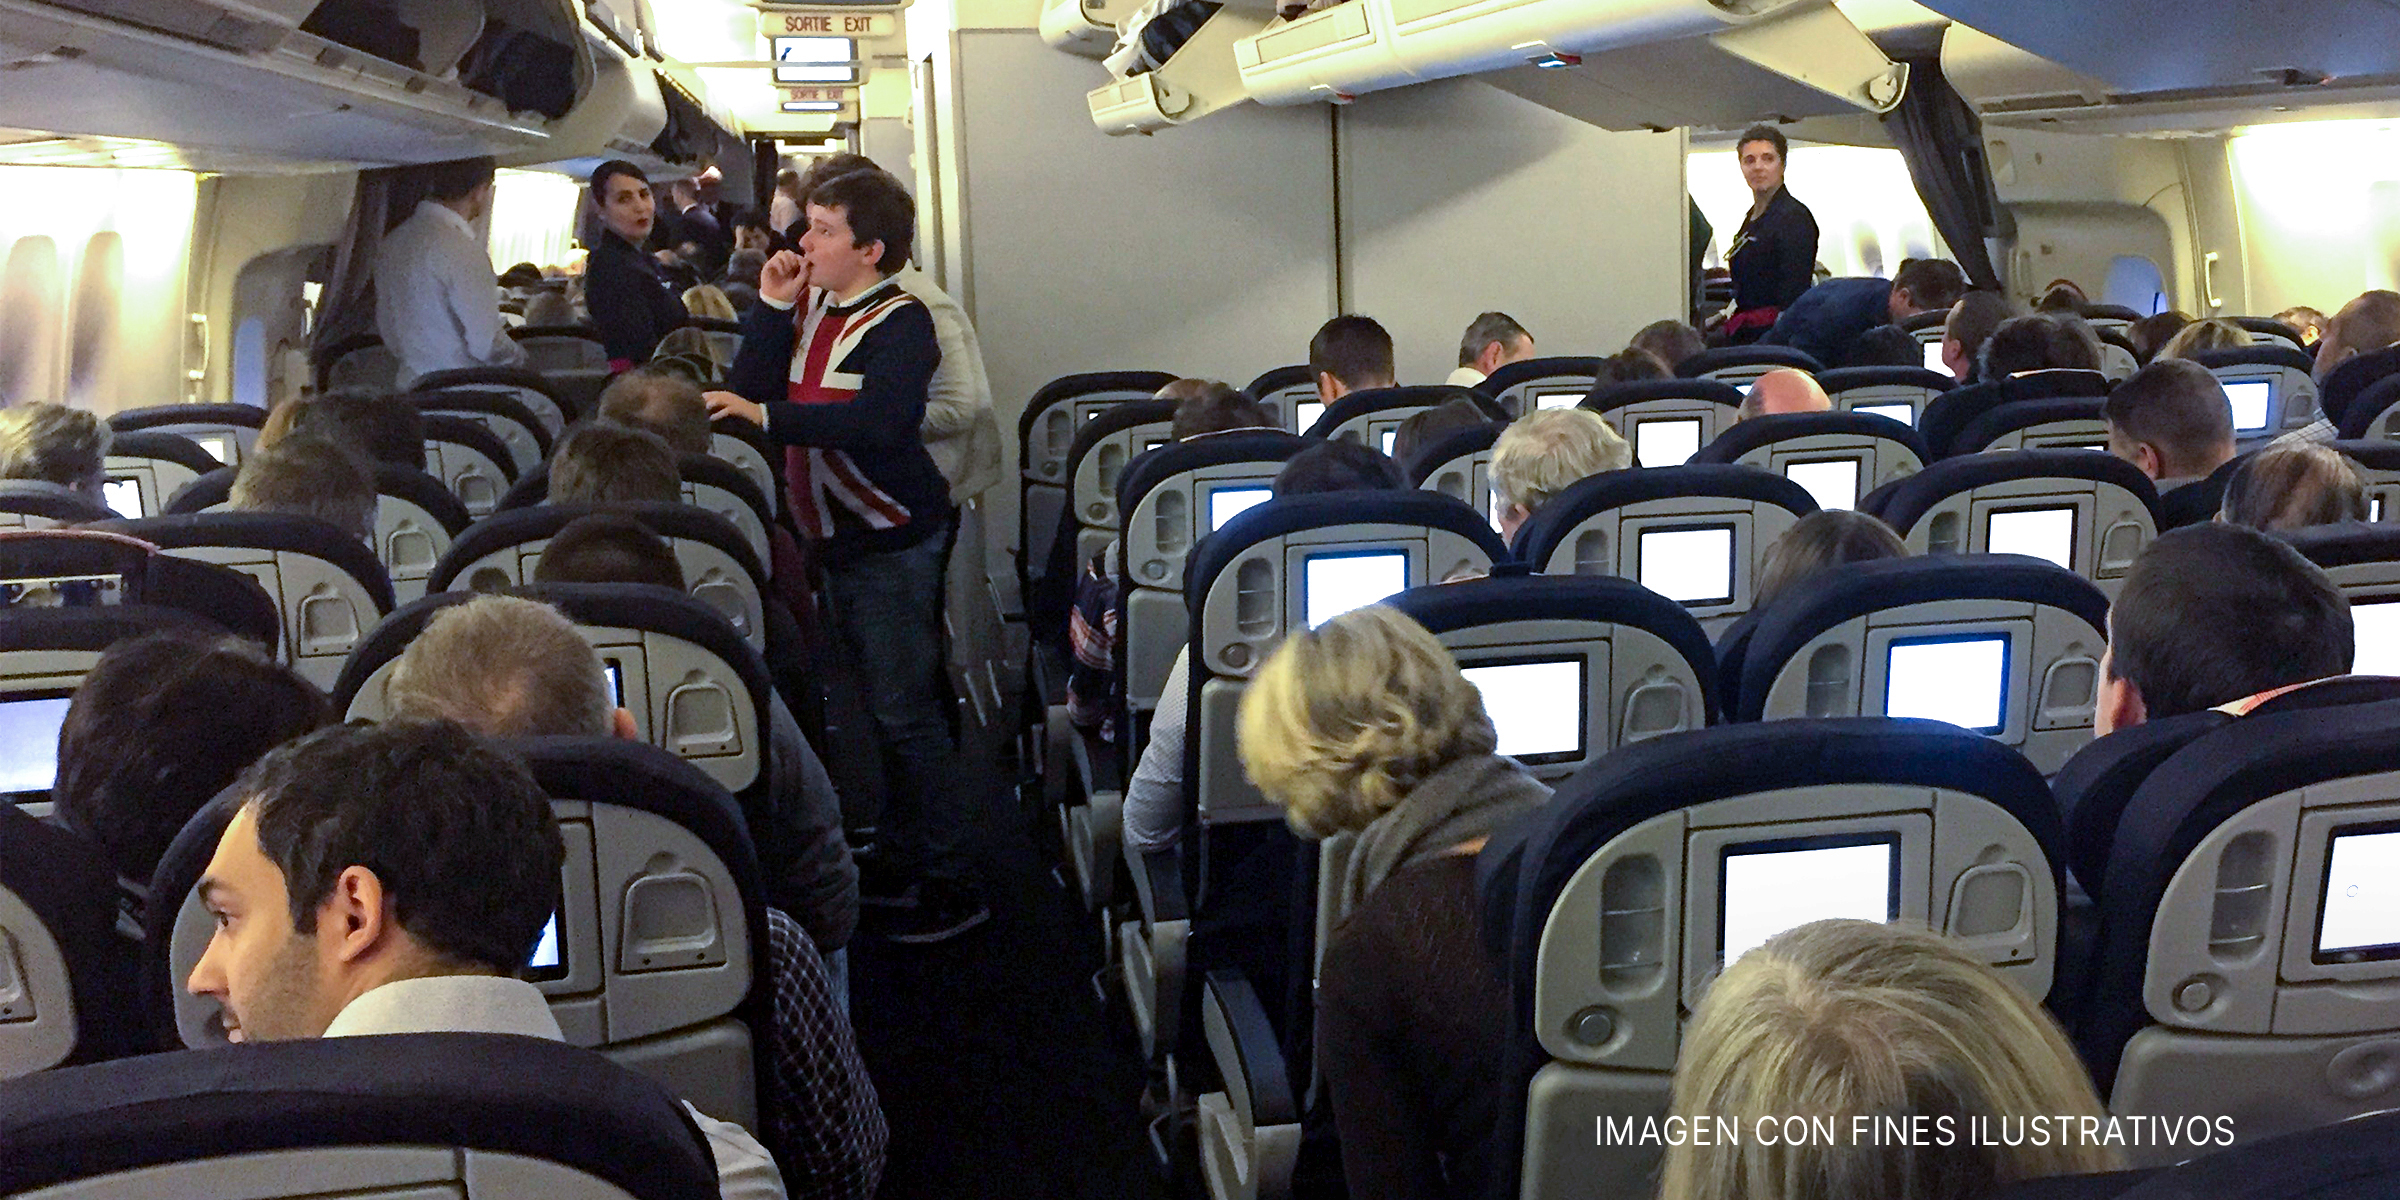 La cabina interior de un avión lleno de pasajeros y tripulación | Fuente: flickr.com/airlines470 (CC BY-SA 2.0)